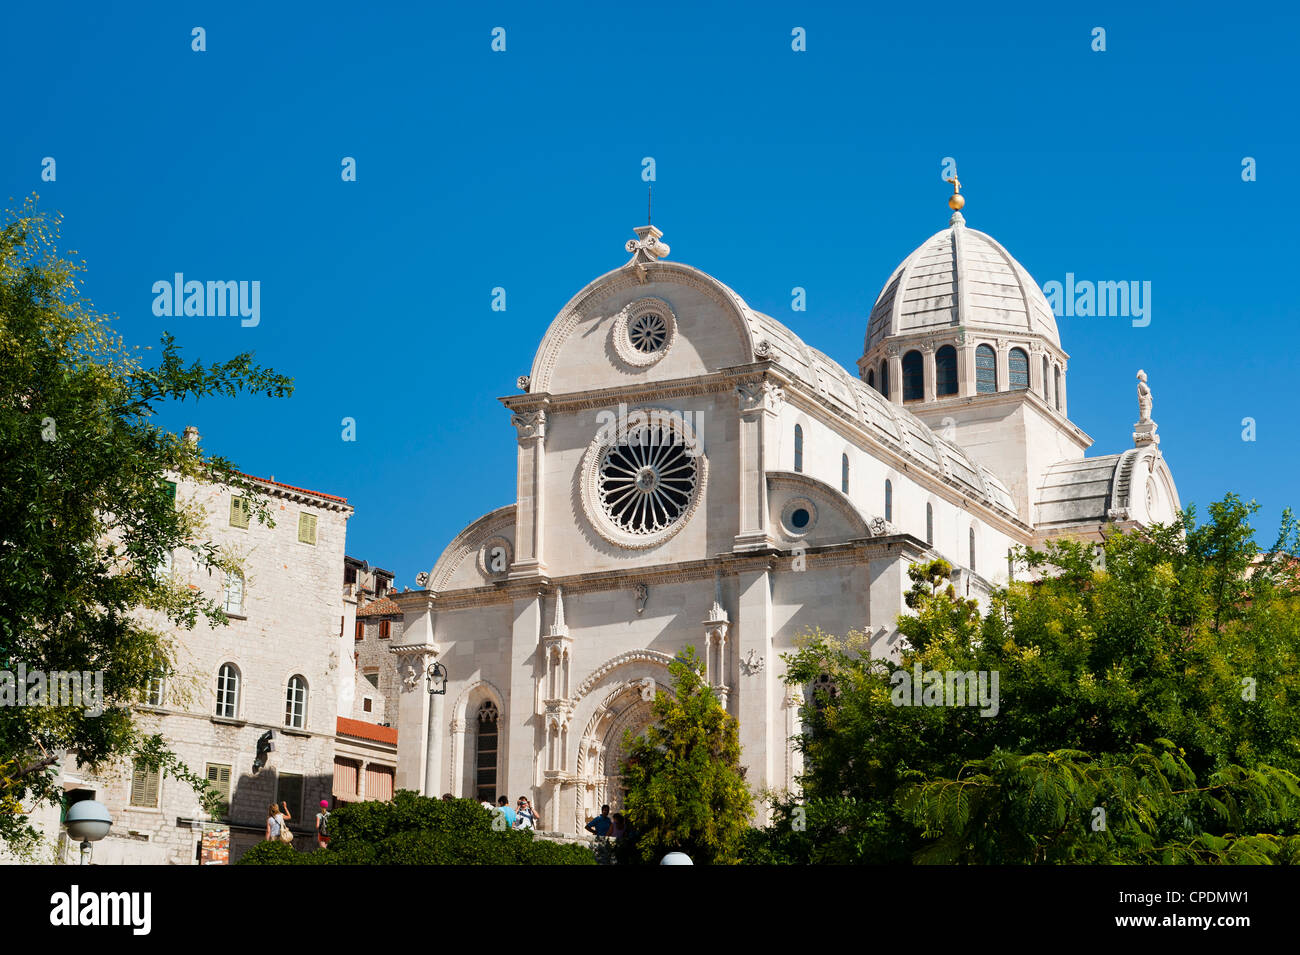 Katedrala Sv. Jakova (St. La Cattedrale di St James), il Sito Patrimonio Mondiale dell'UNESCO, Sibenik, Dalmazia regione, Croazia, Europa Foto Stock